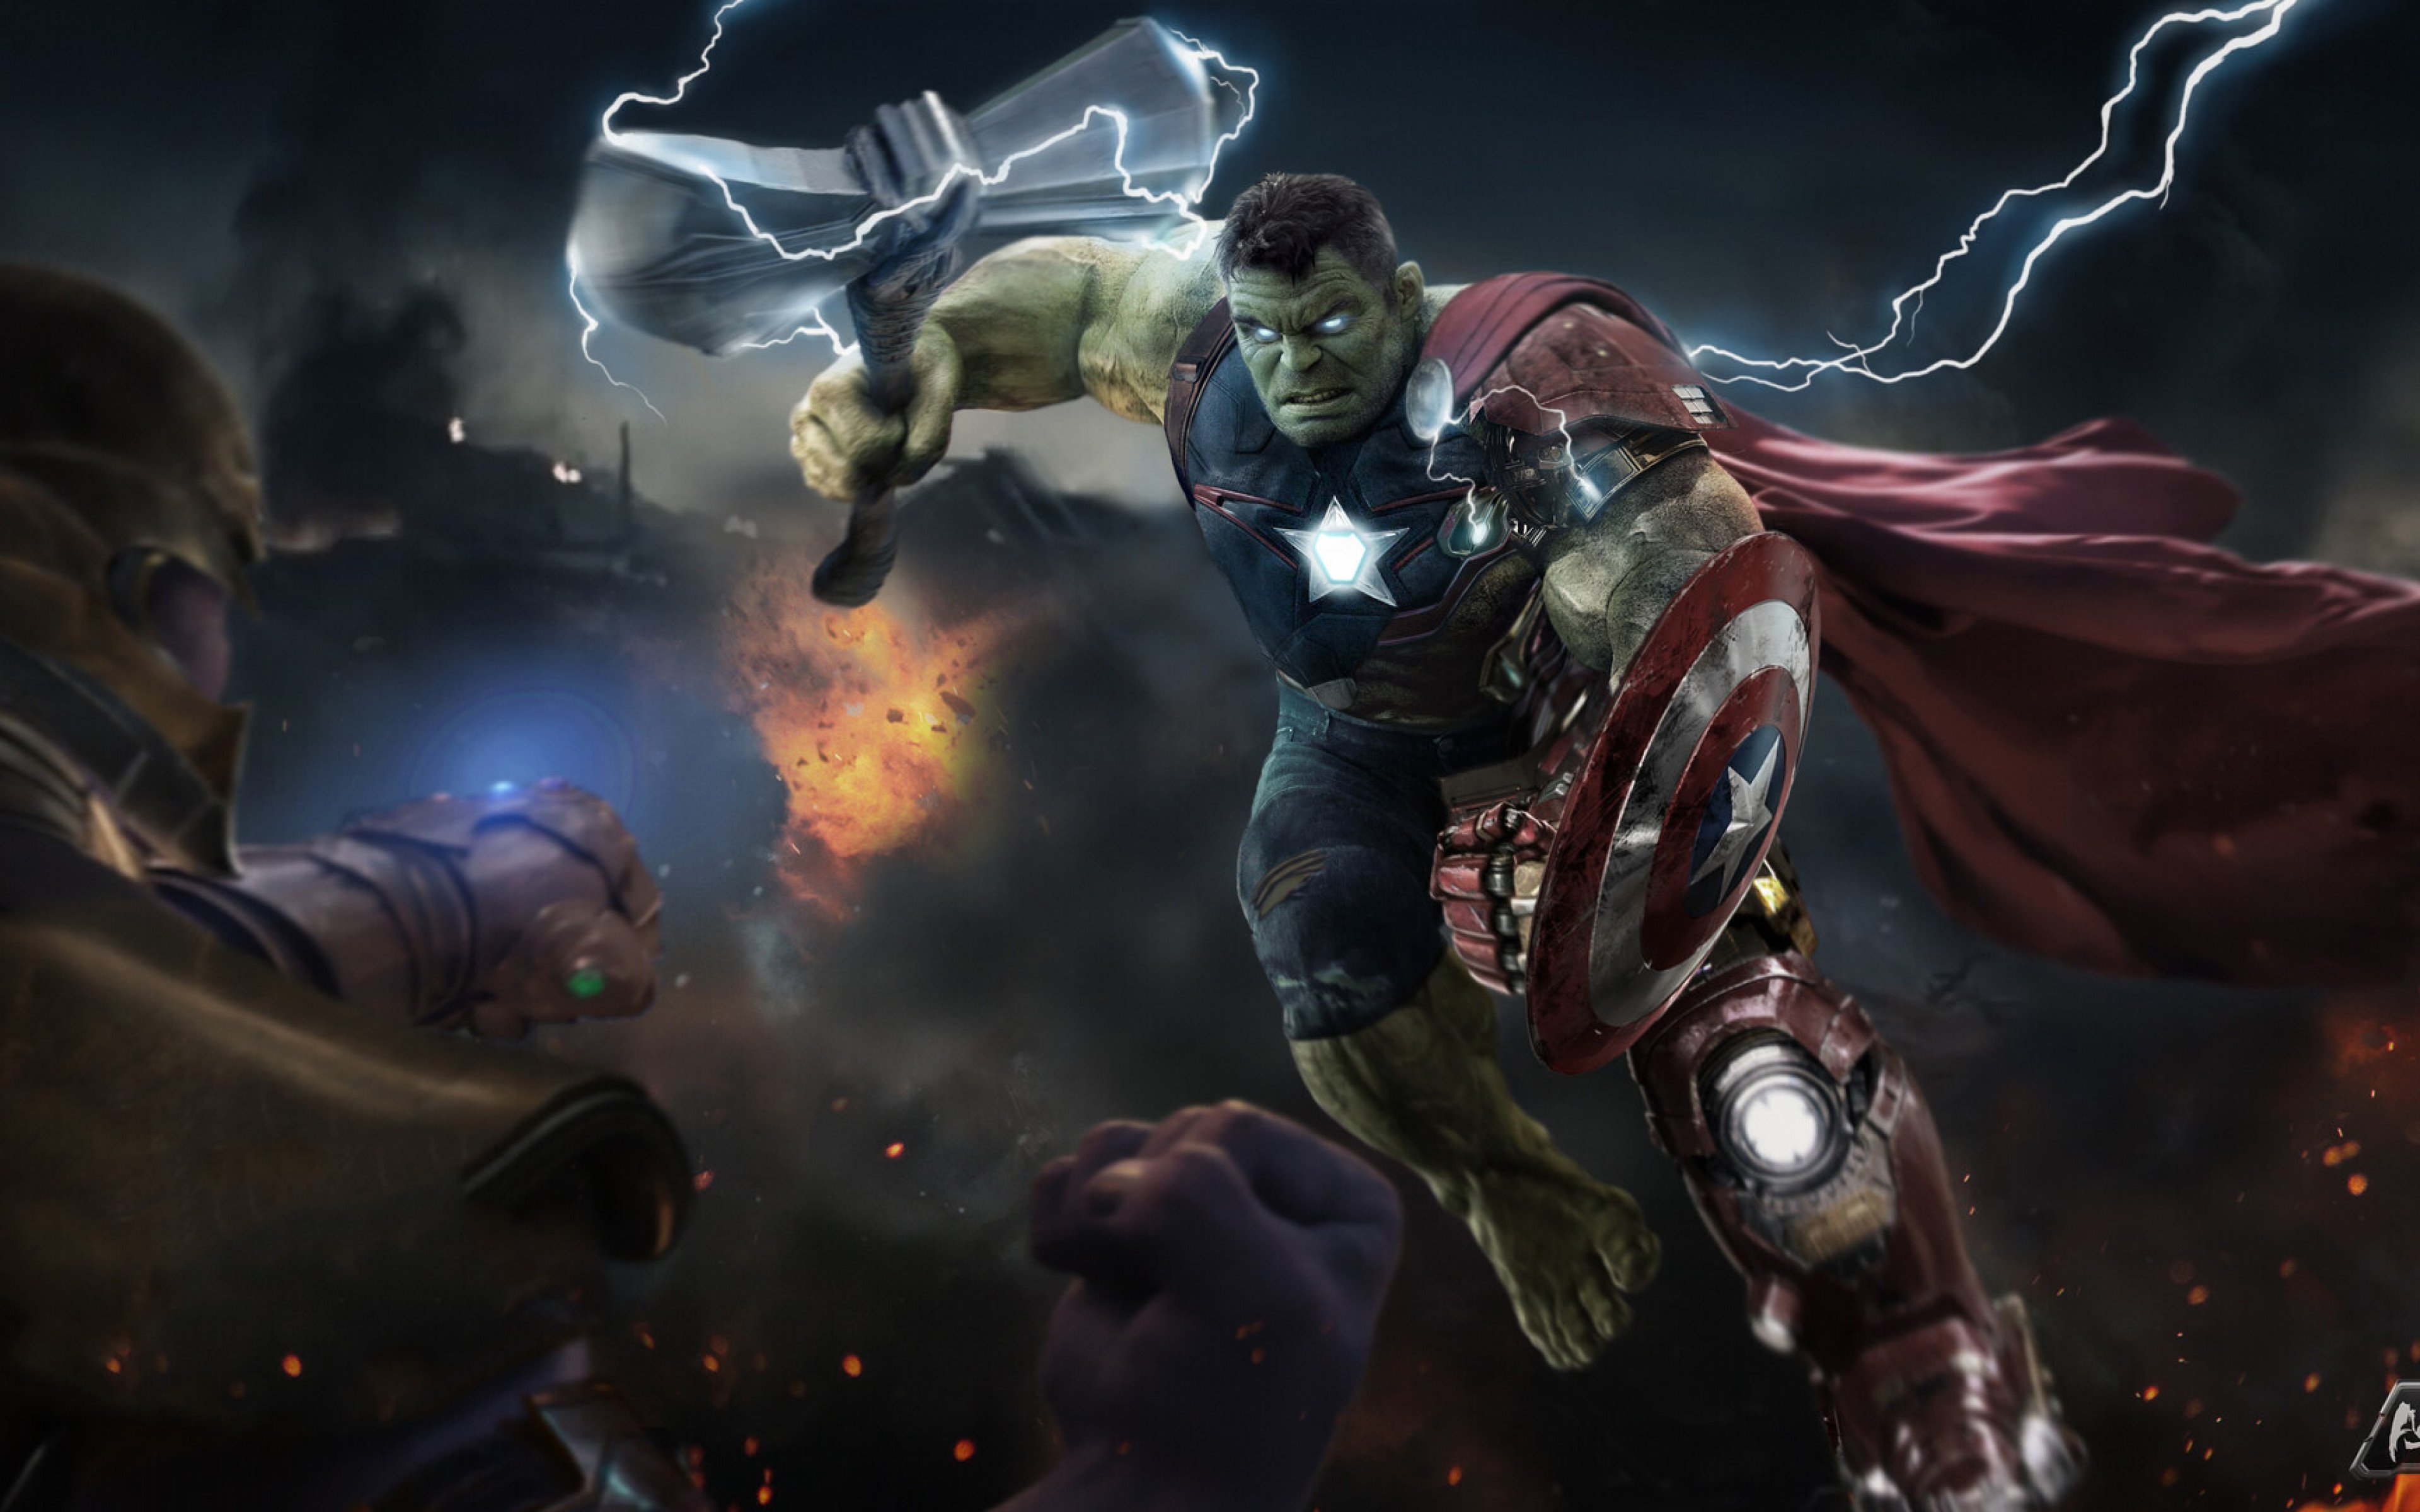 Fondos de pantalla Hulk en Avengers Endgame